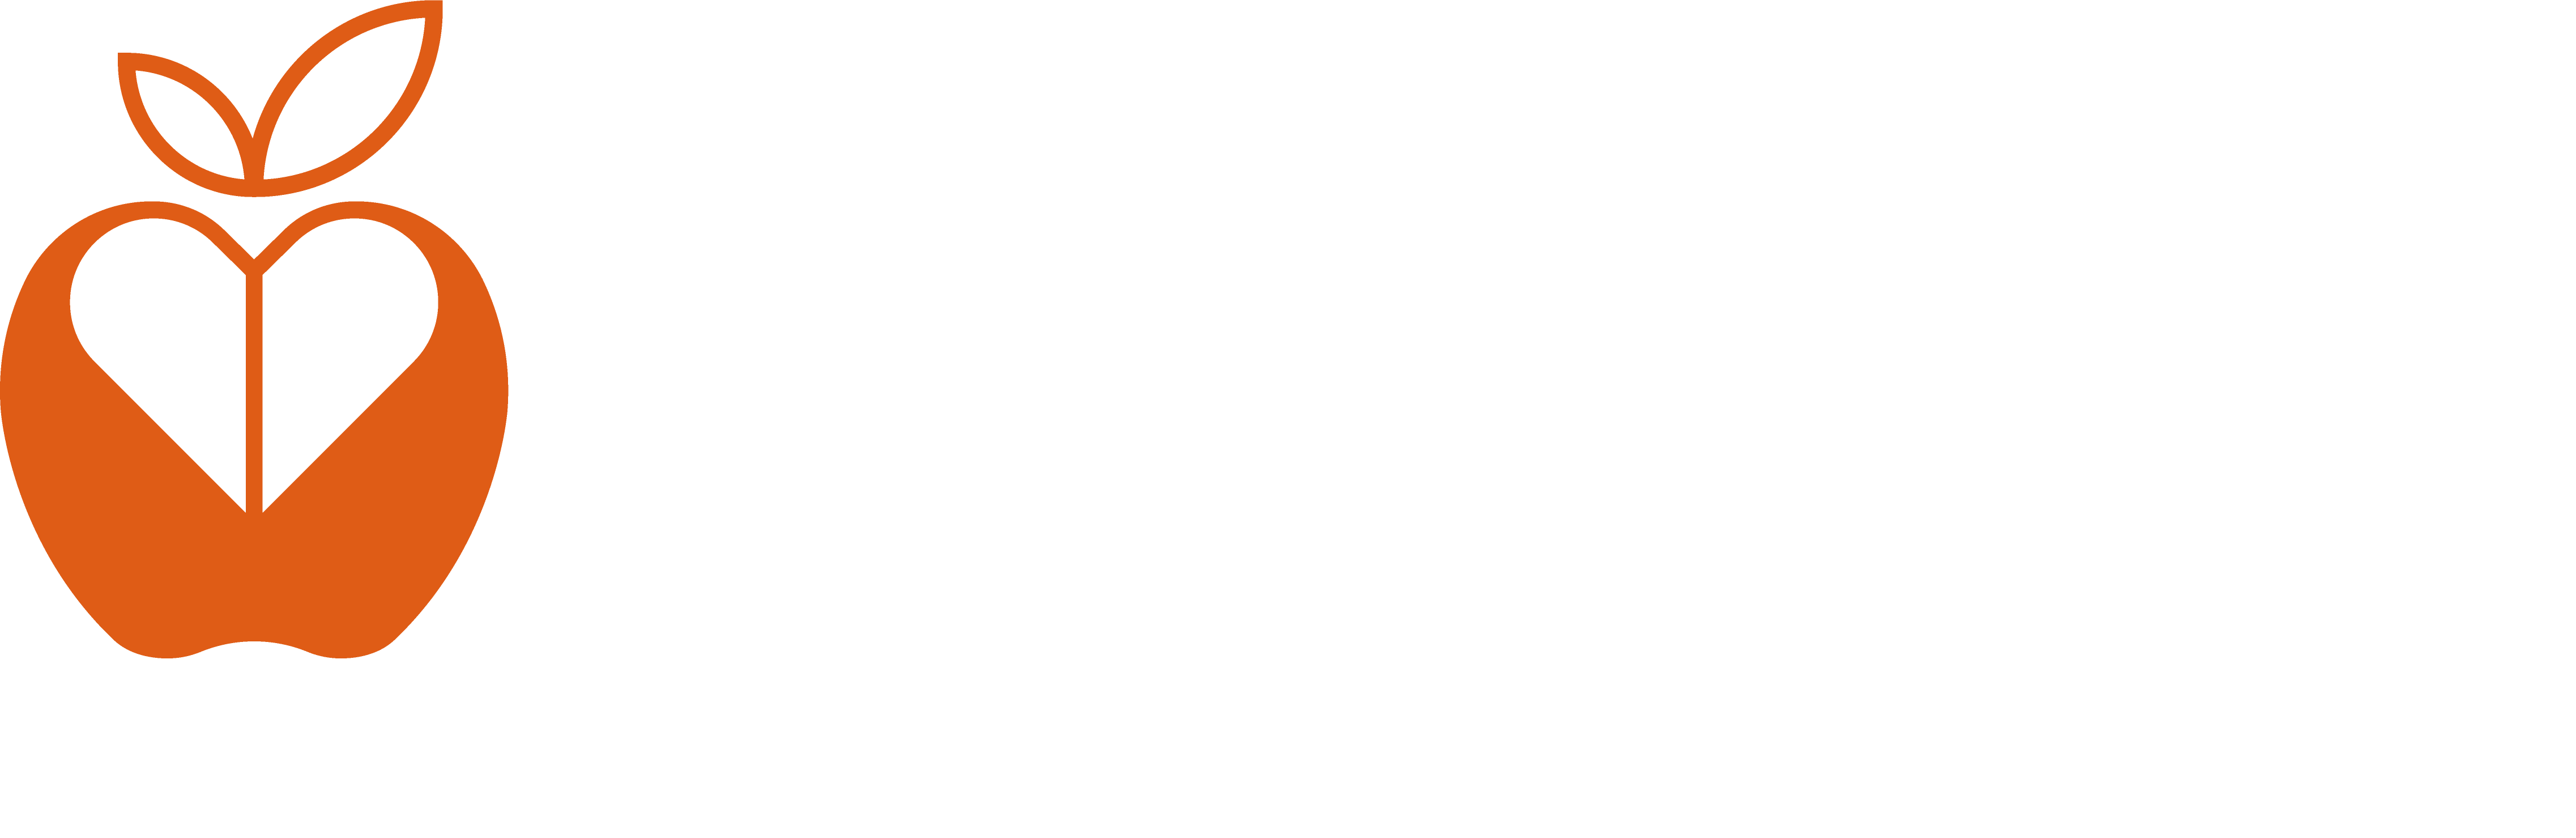 Keep Education